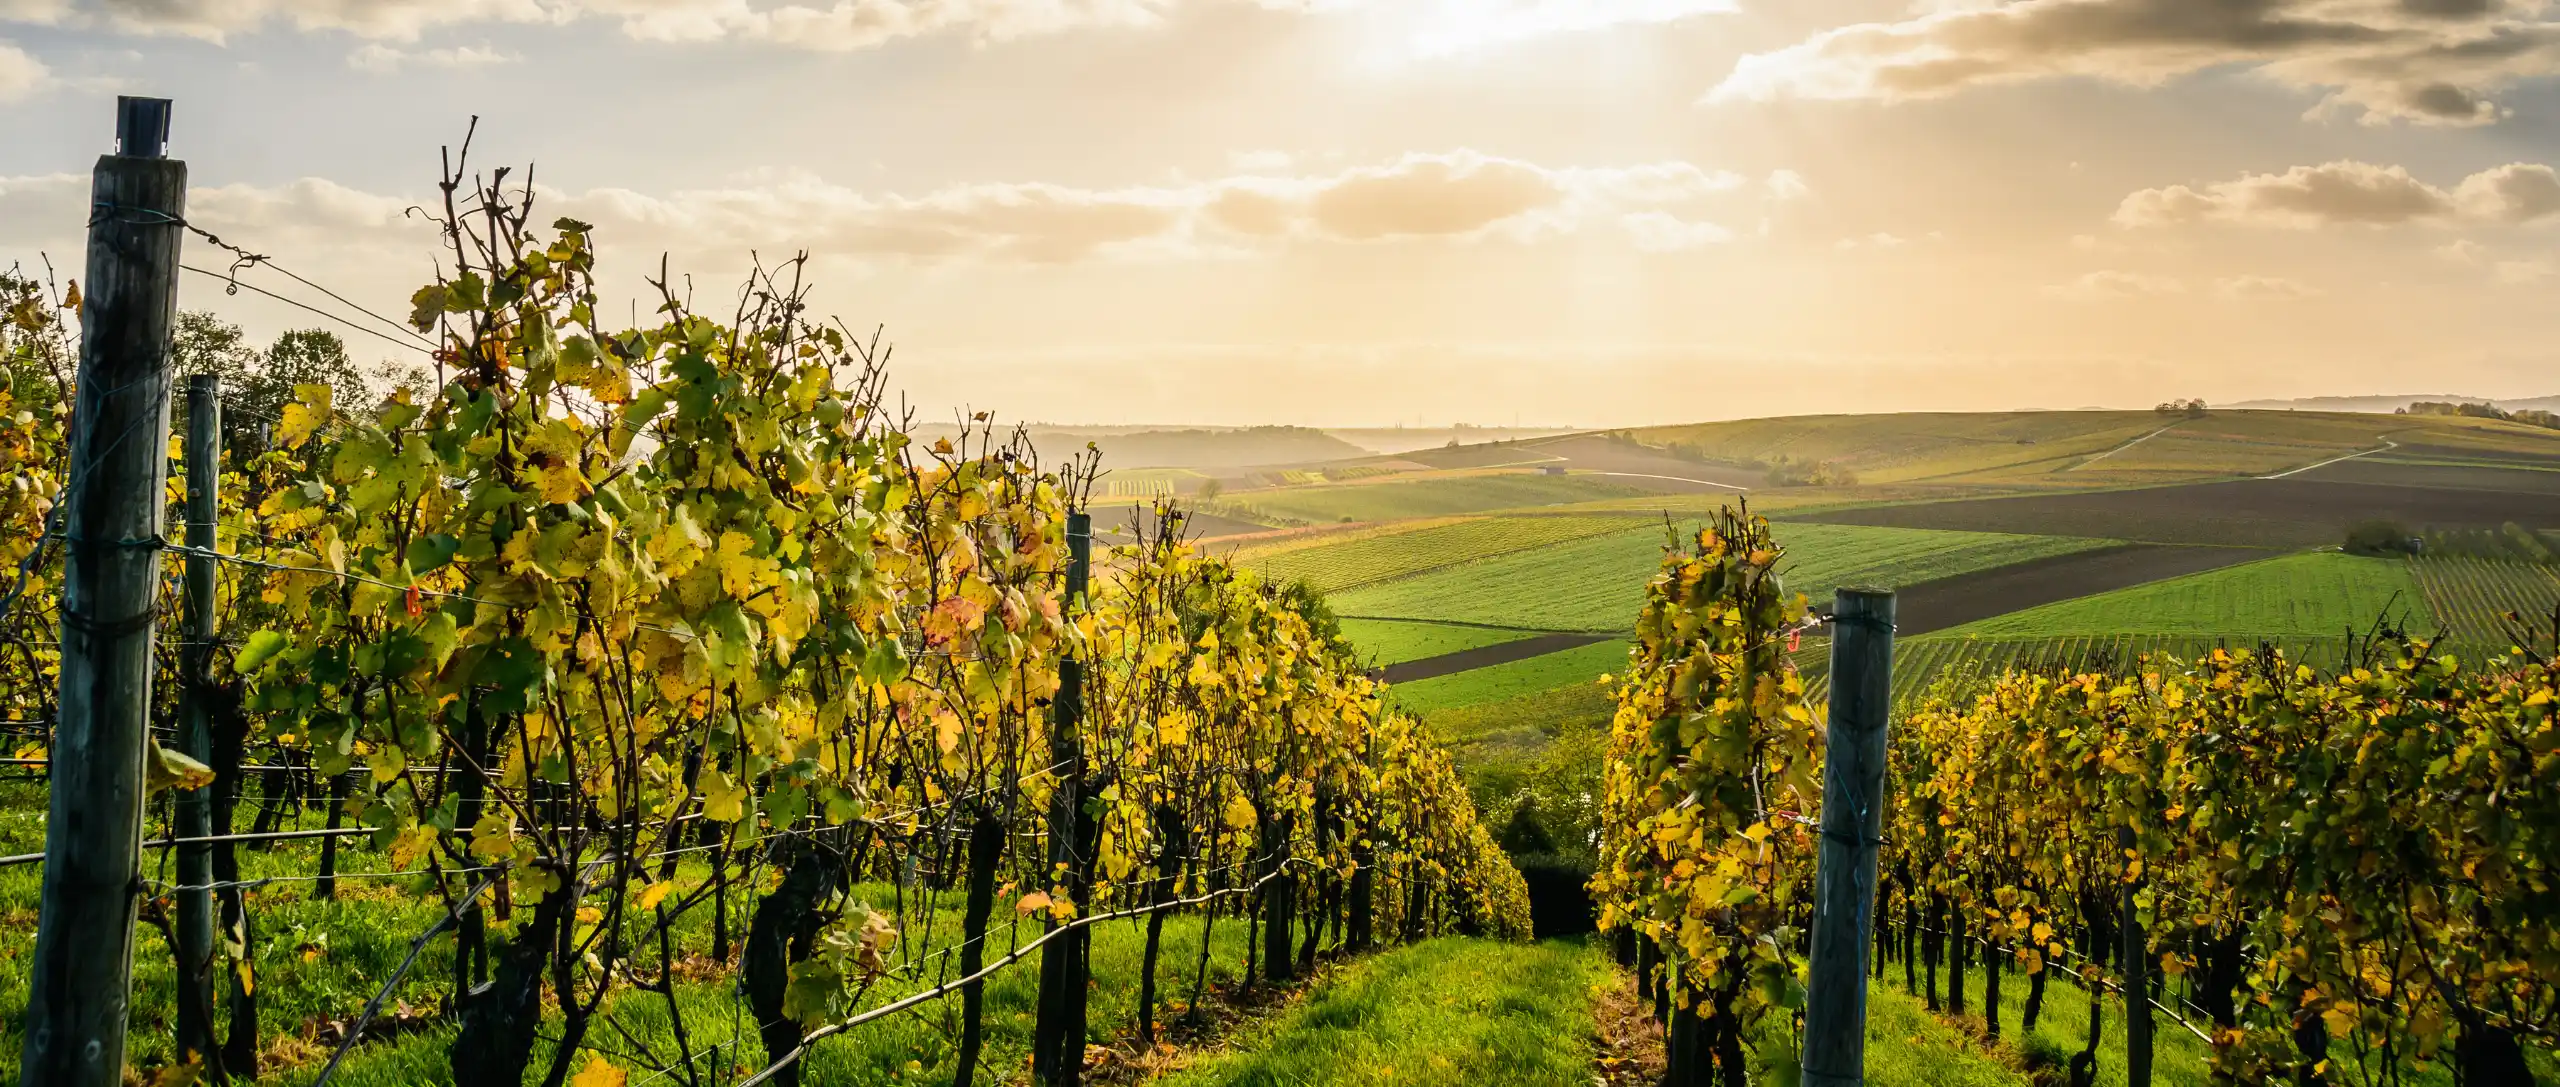 Detalle de los viñedos de donde los meses de septiembre y octubre se obtendrá una uva de primera calidad